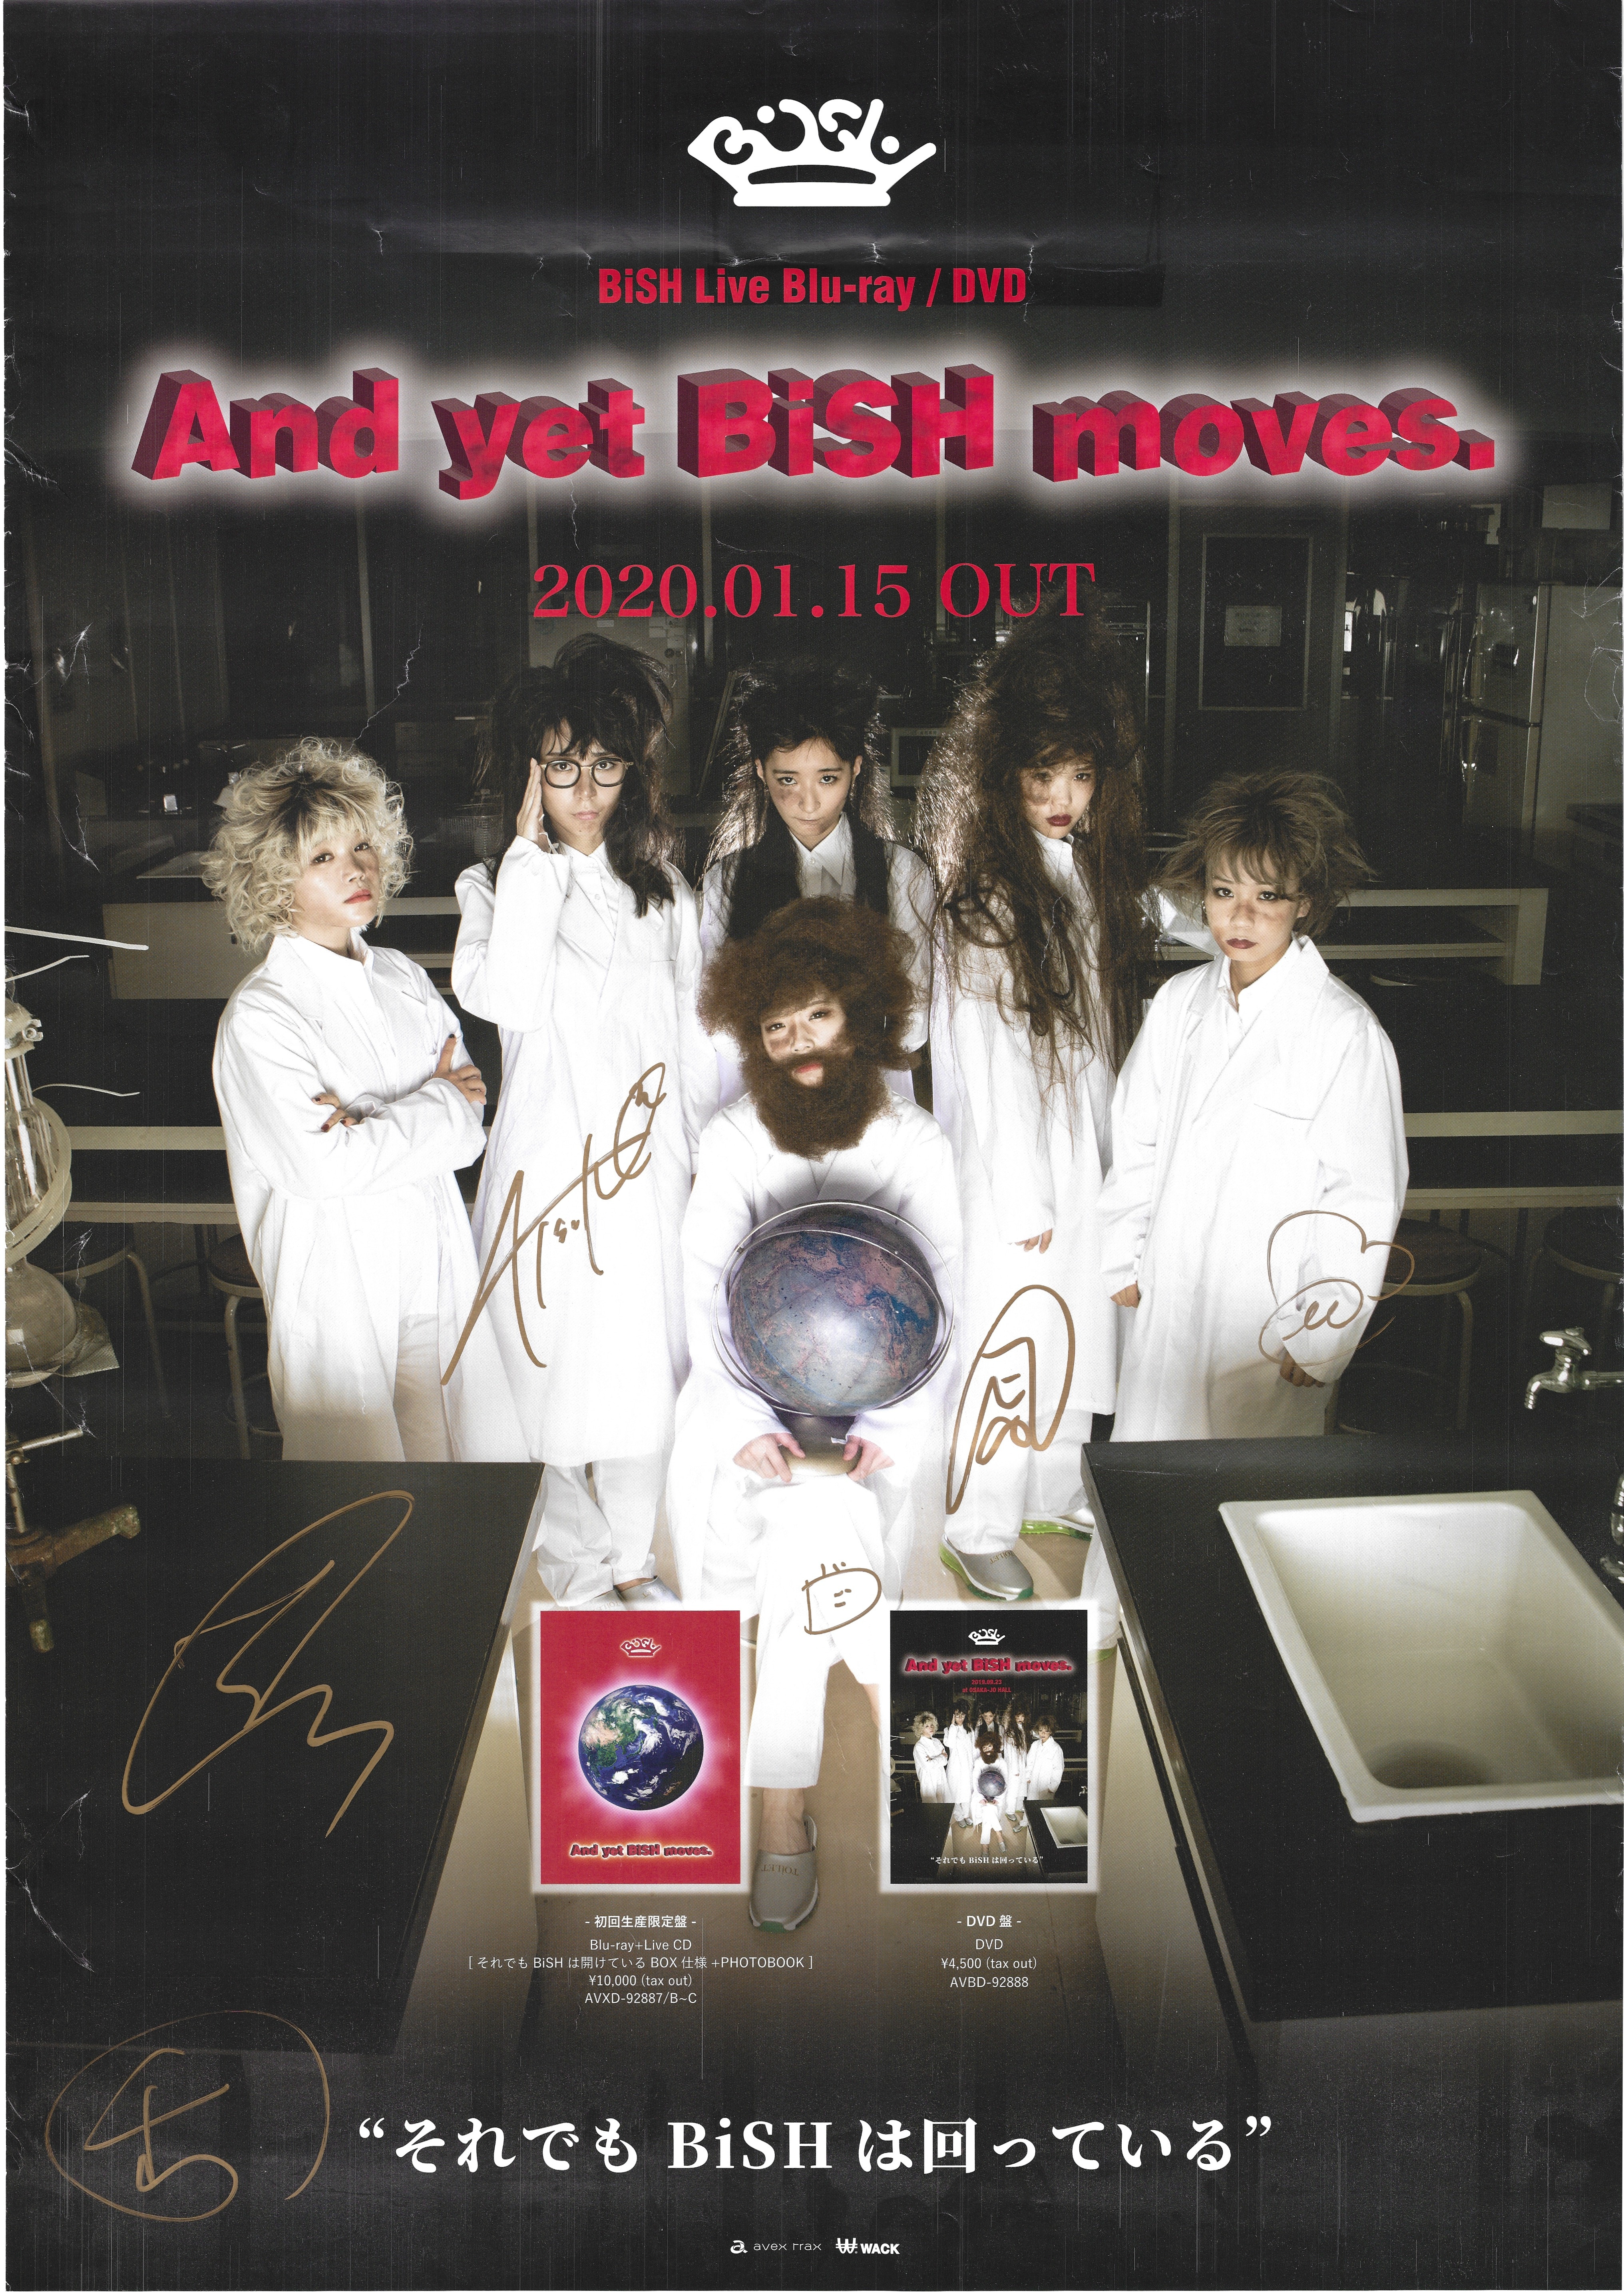 BiSH「And yet BiSH moves.」メンバー全員サイン入りポスター 高質で